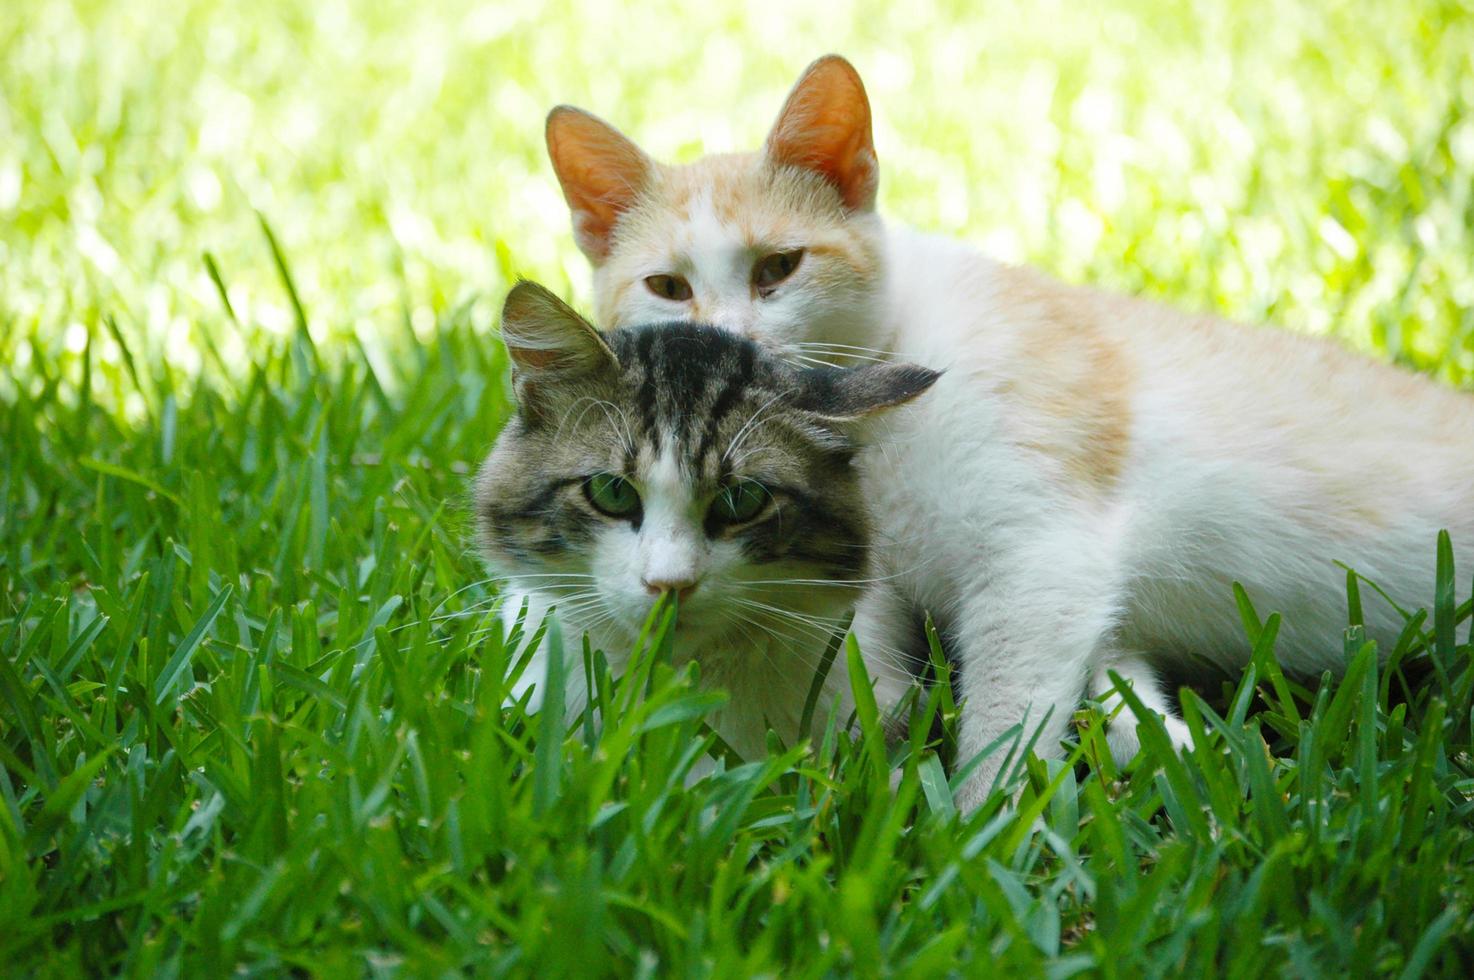 katt med sin man på gräset, katt kramar katt foto